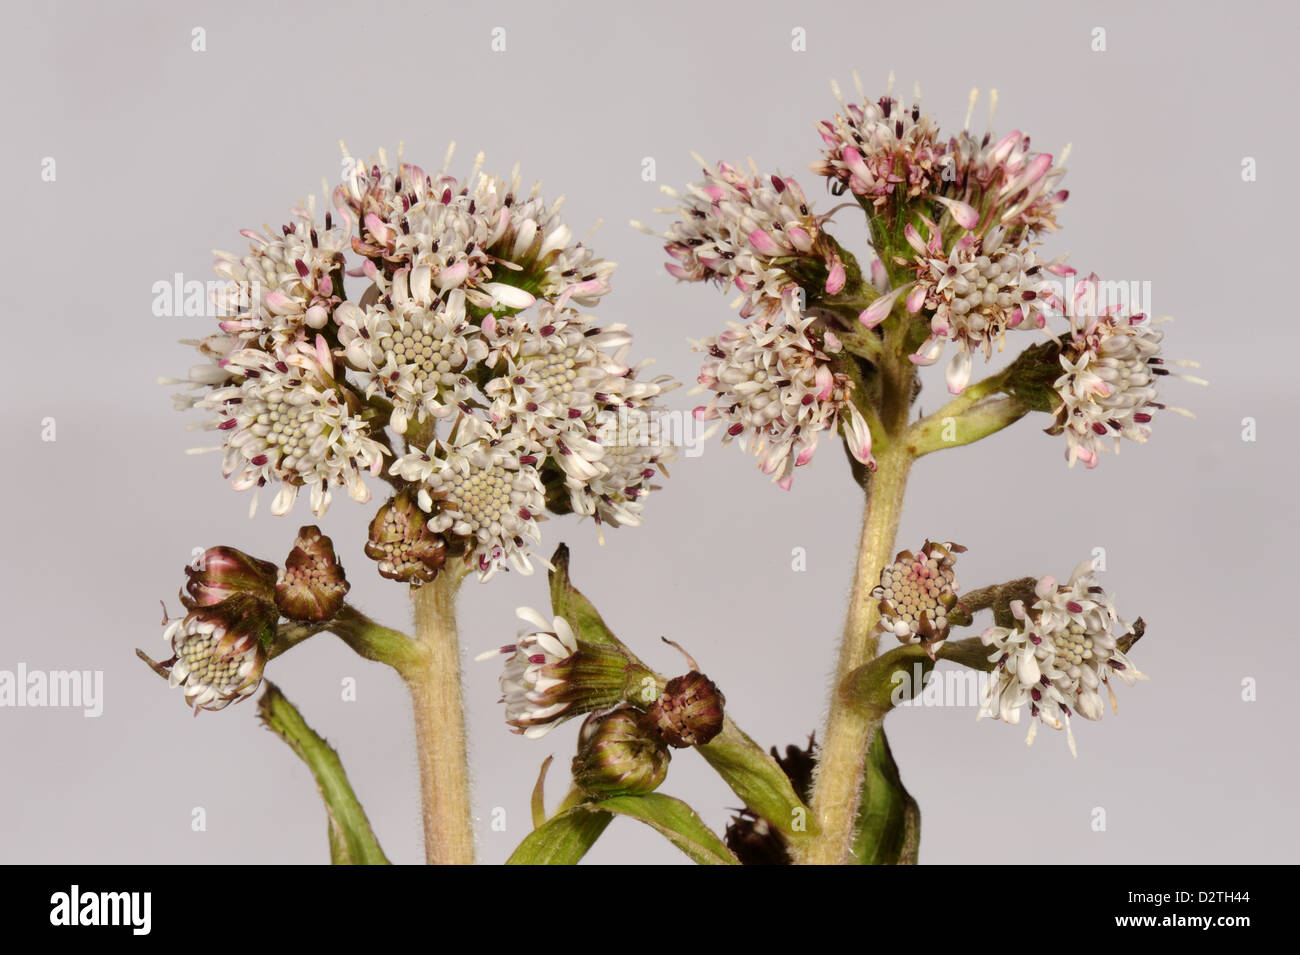 Blume-Spikes von gemeinsamen Pestwurz, Petasites Hybridus, einem frühen zusammengesetzte Blütenpflanze Stockfoto